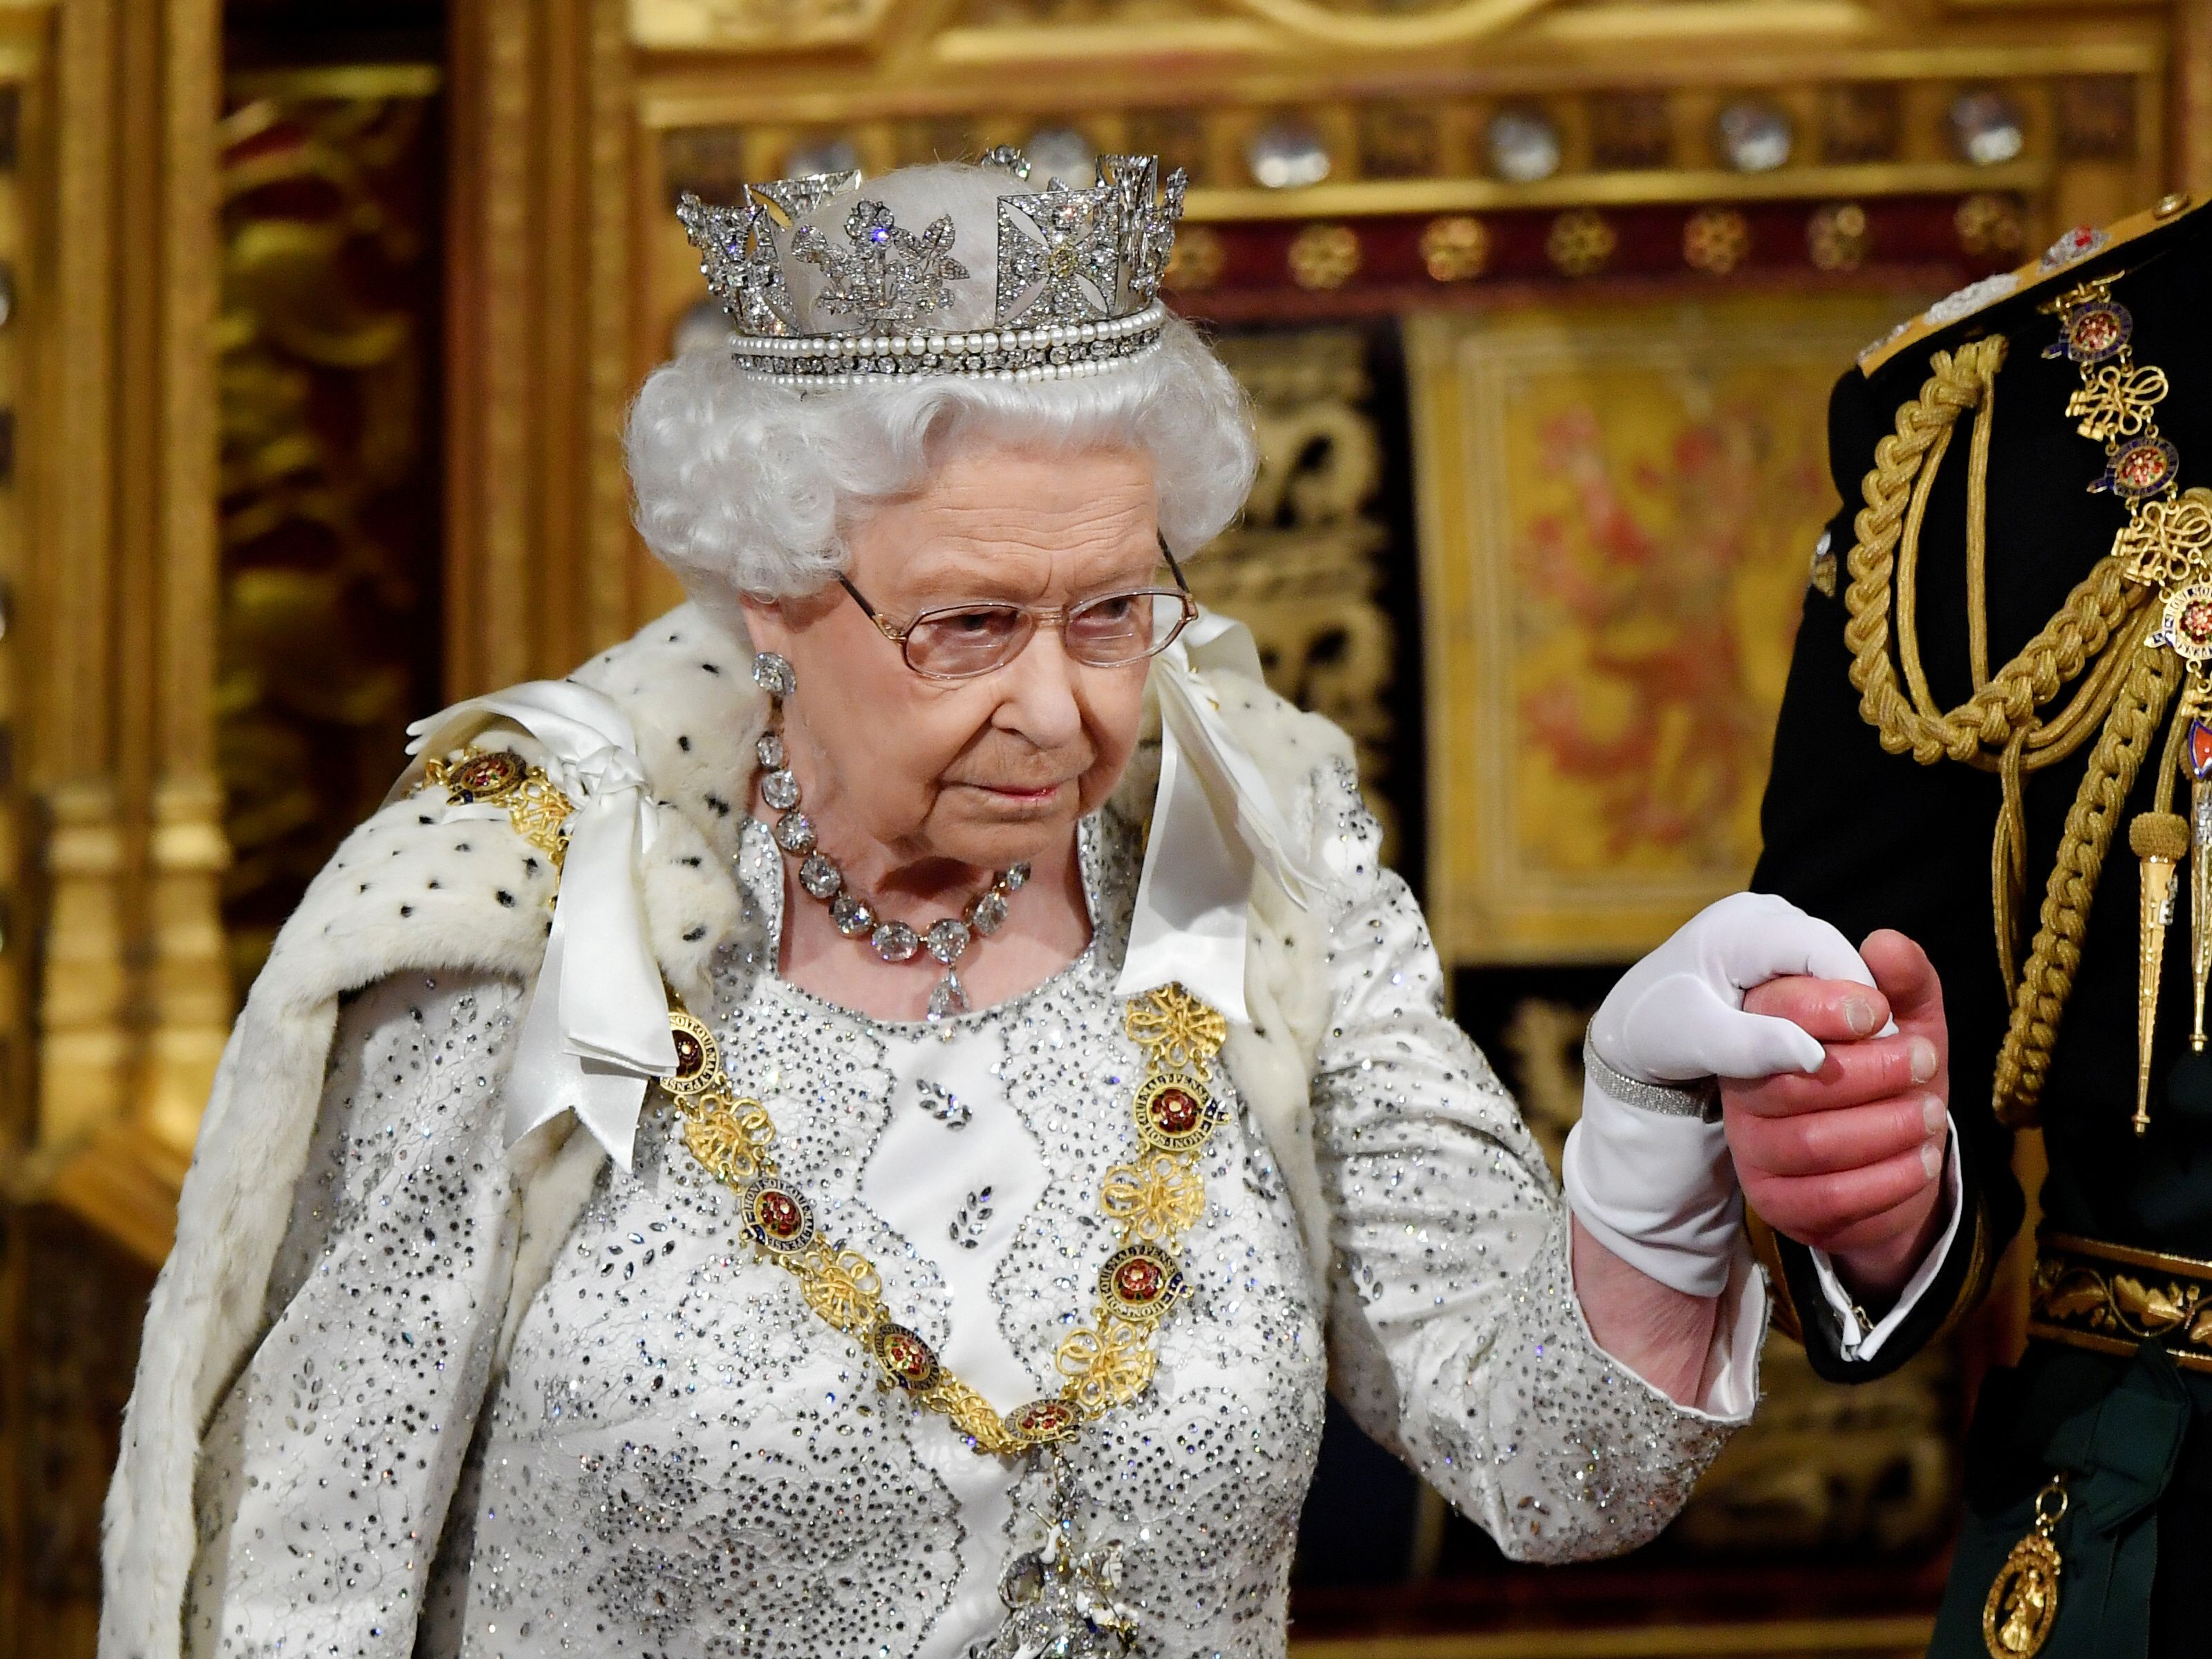 ملكة بريطانيا إليزابيث تغادر مع تشارلز ، أمير ويلز بعد إلقائها خطاب